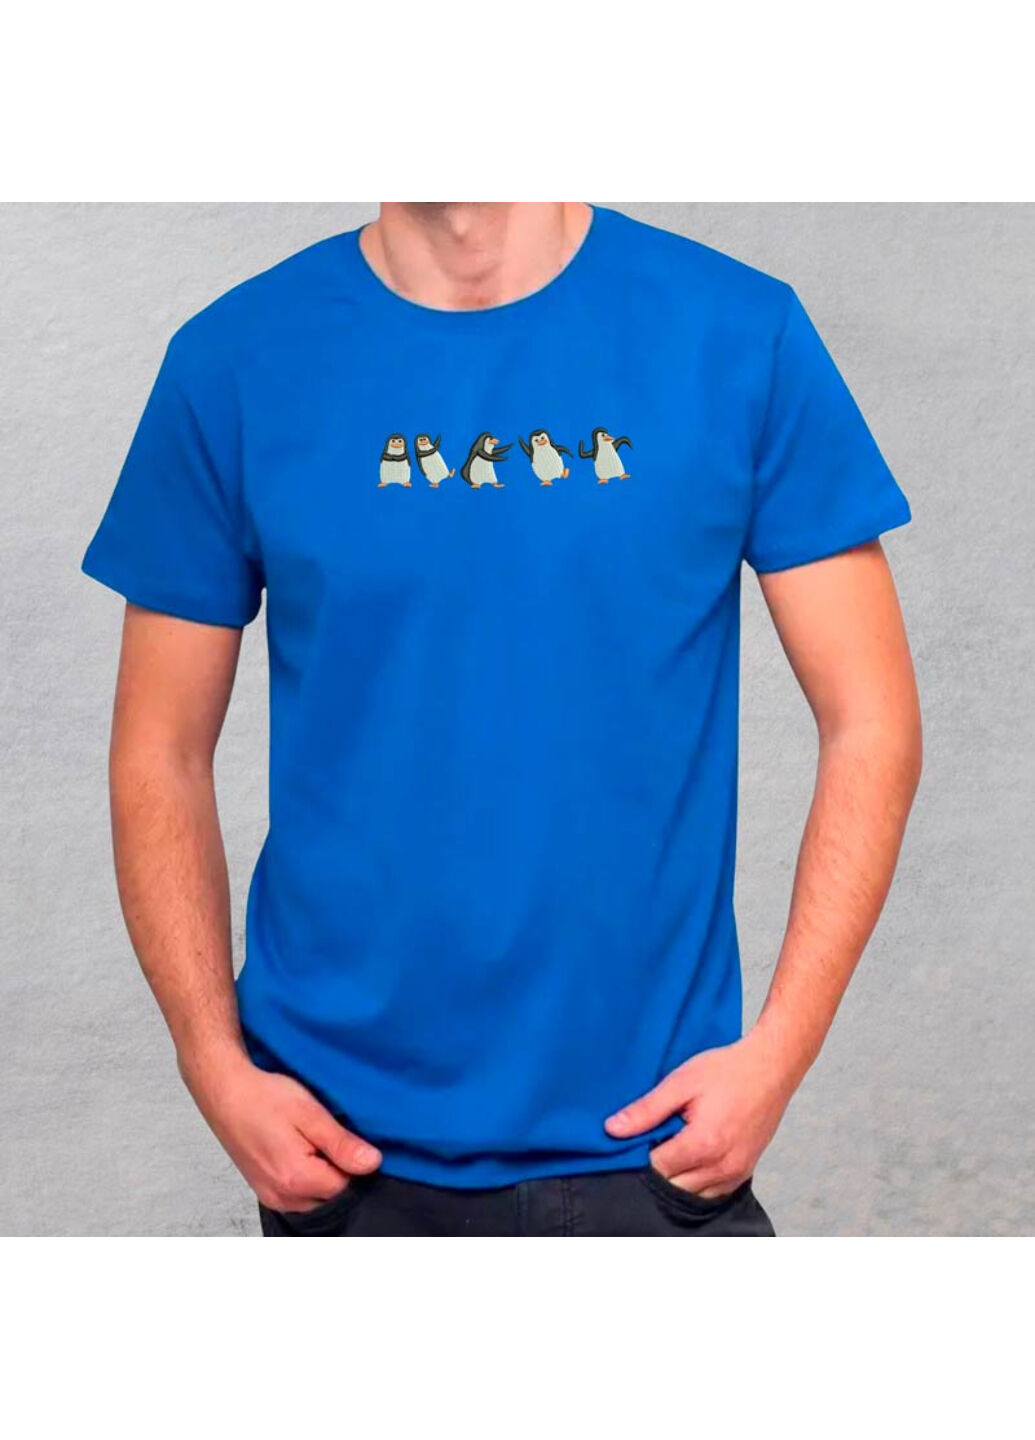 Синя футболка з вишивкою пінгвінів 01-3 чоловіча синій s No Brand